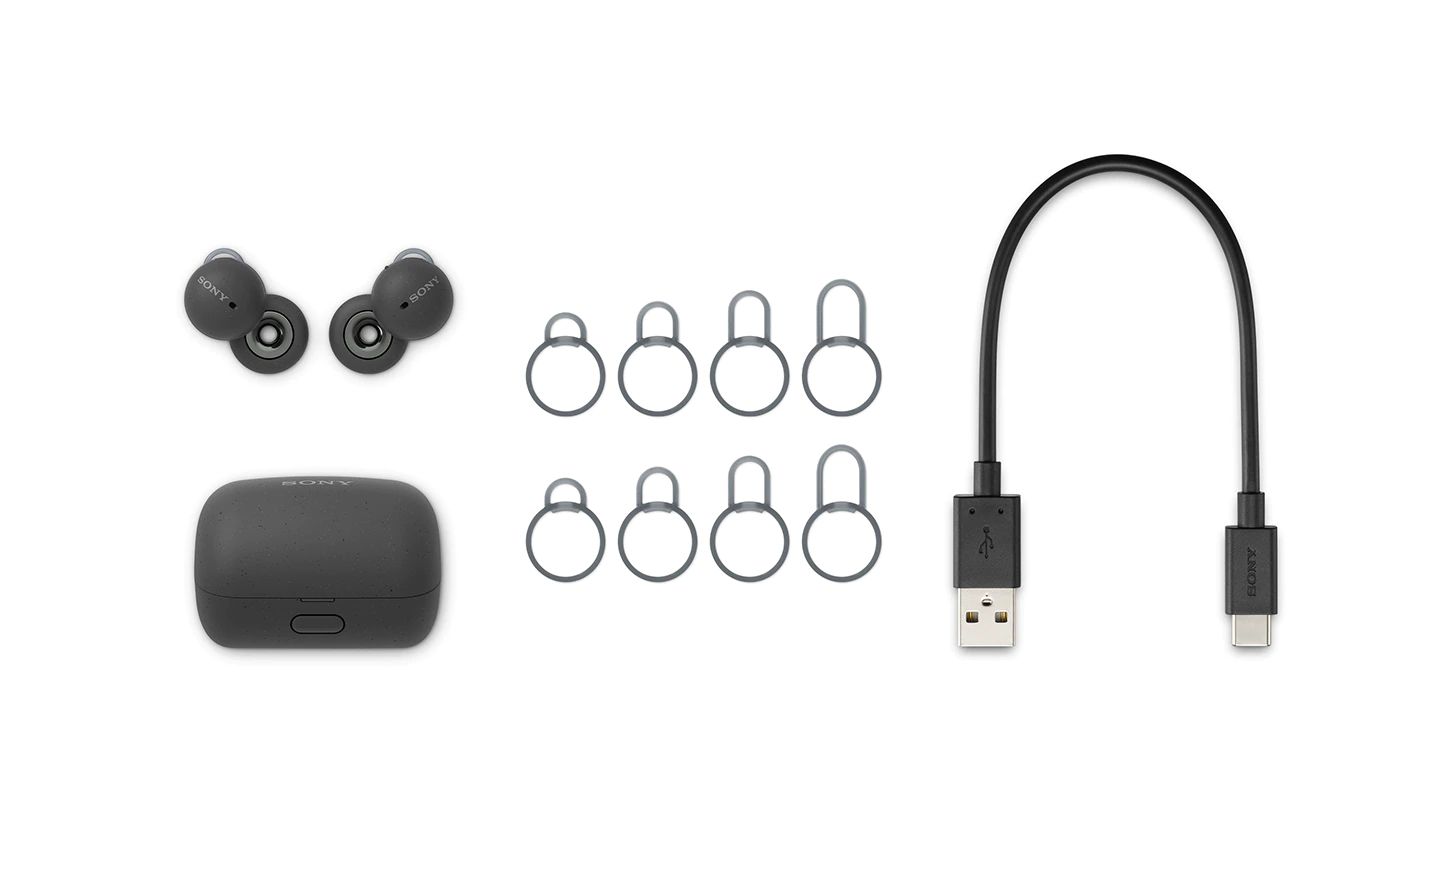 Sony WF-L900 Linkbuds True Wireless In-Ear Bluetooth Kopfhörer weiß ++  Cyberport